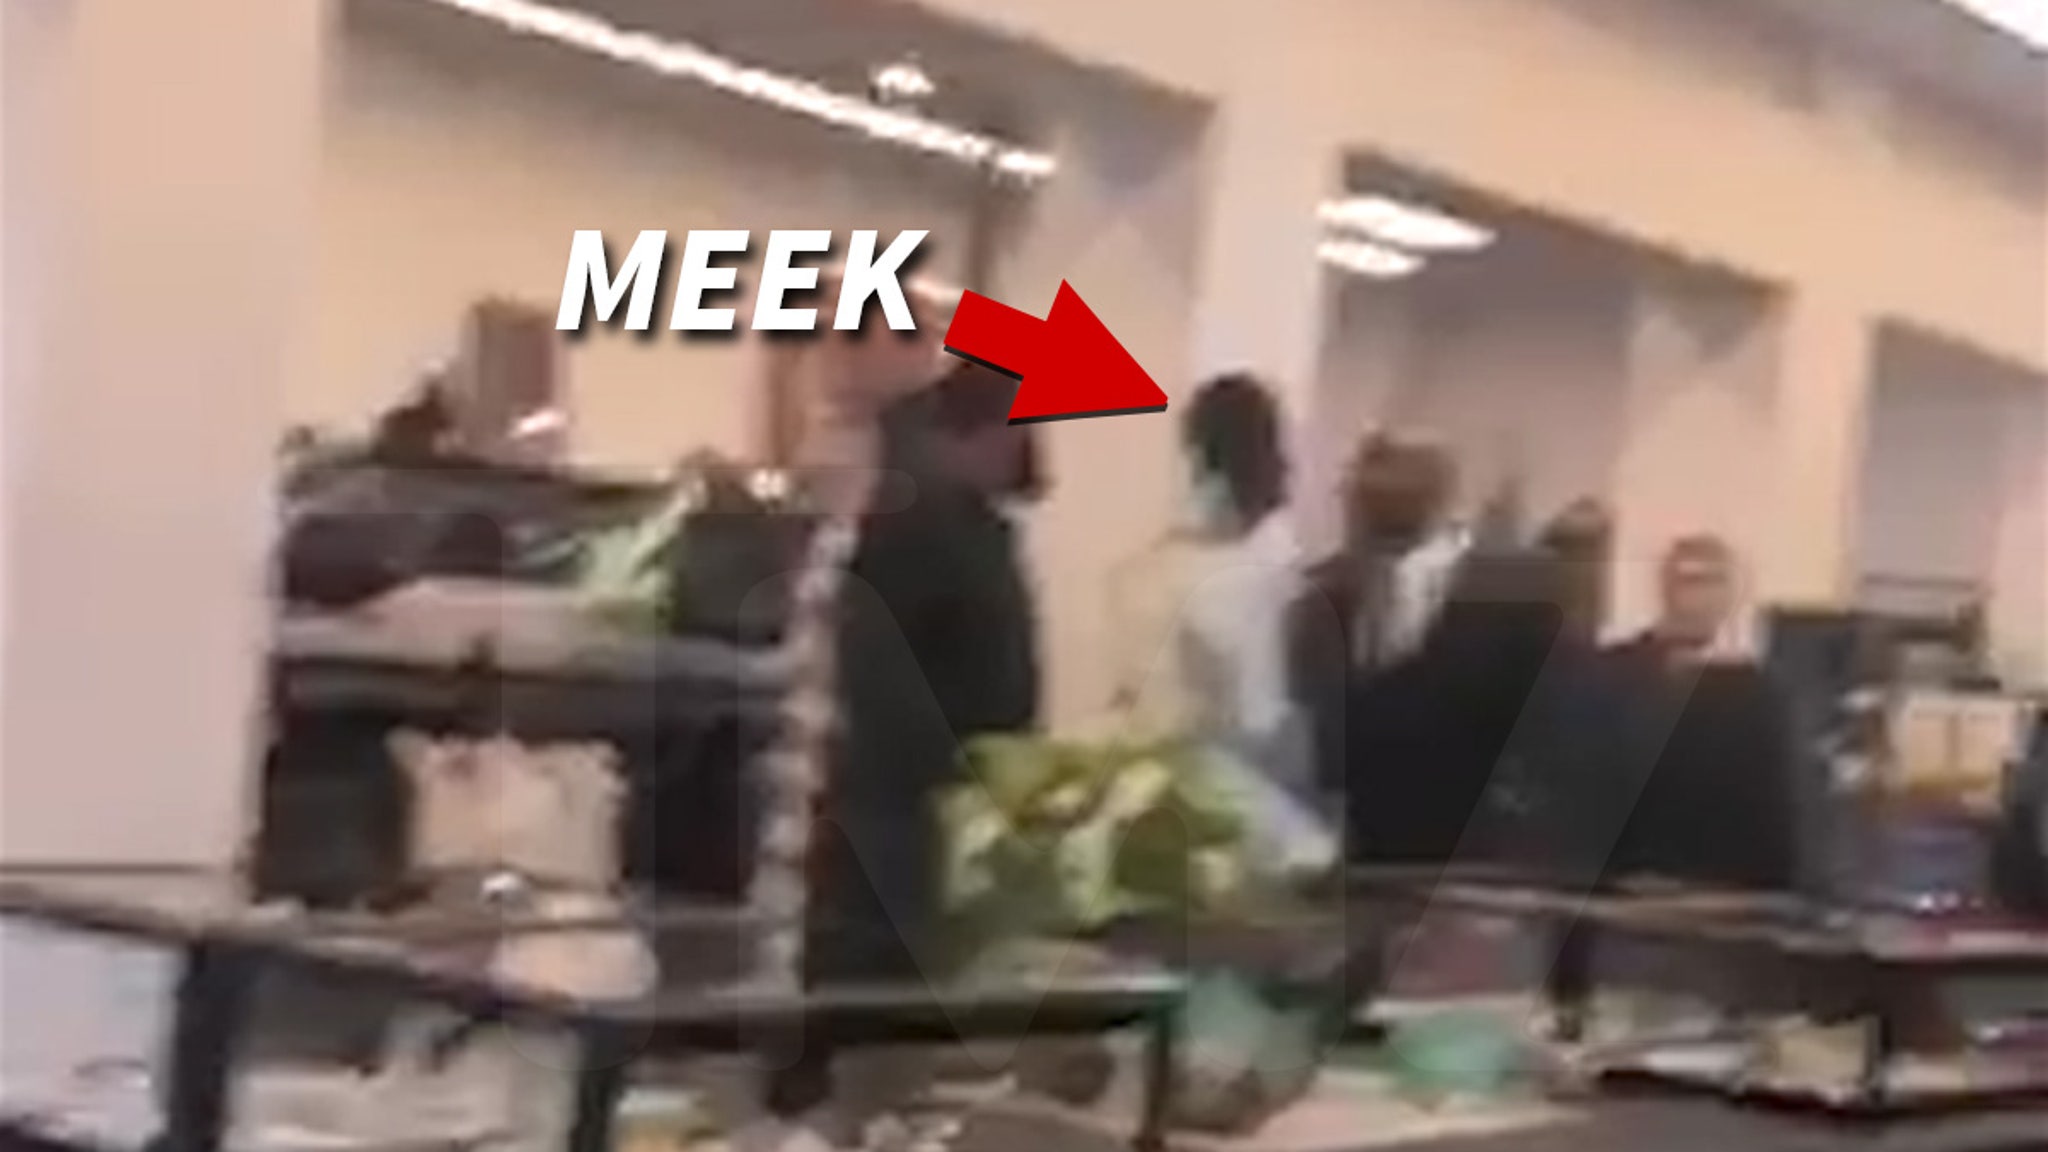 Nicki Minaj Kenneth Petty Fight With Ex Meek Mill at LA Store